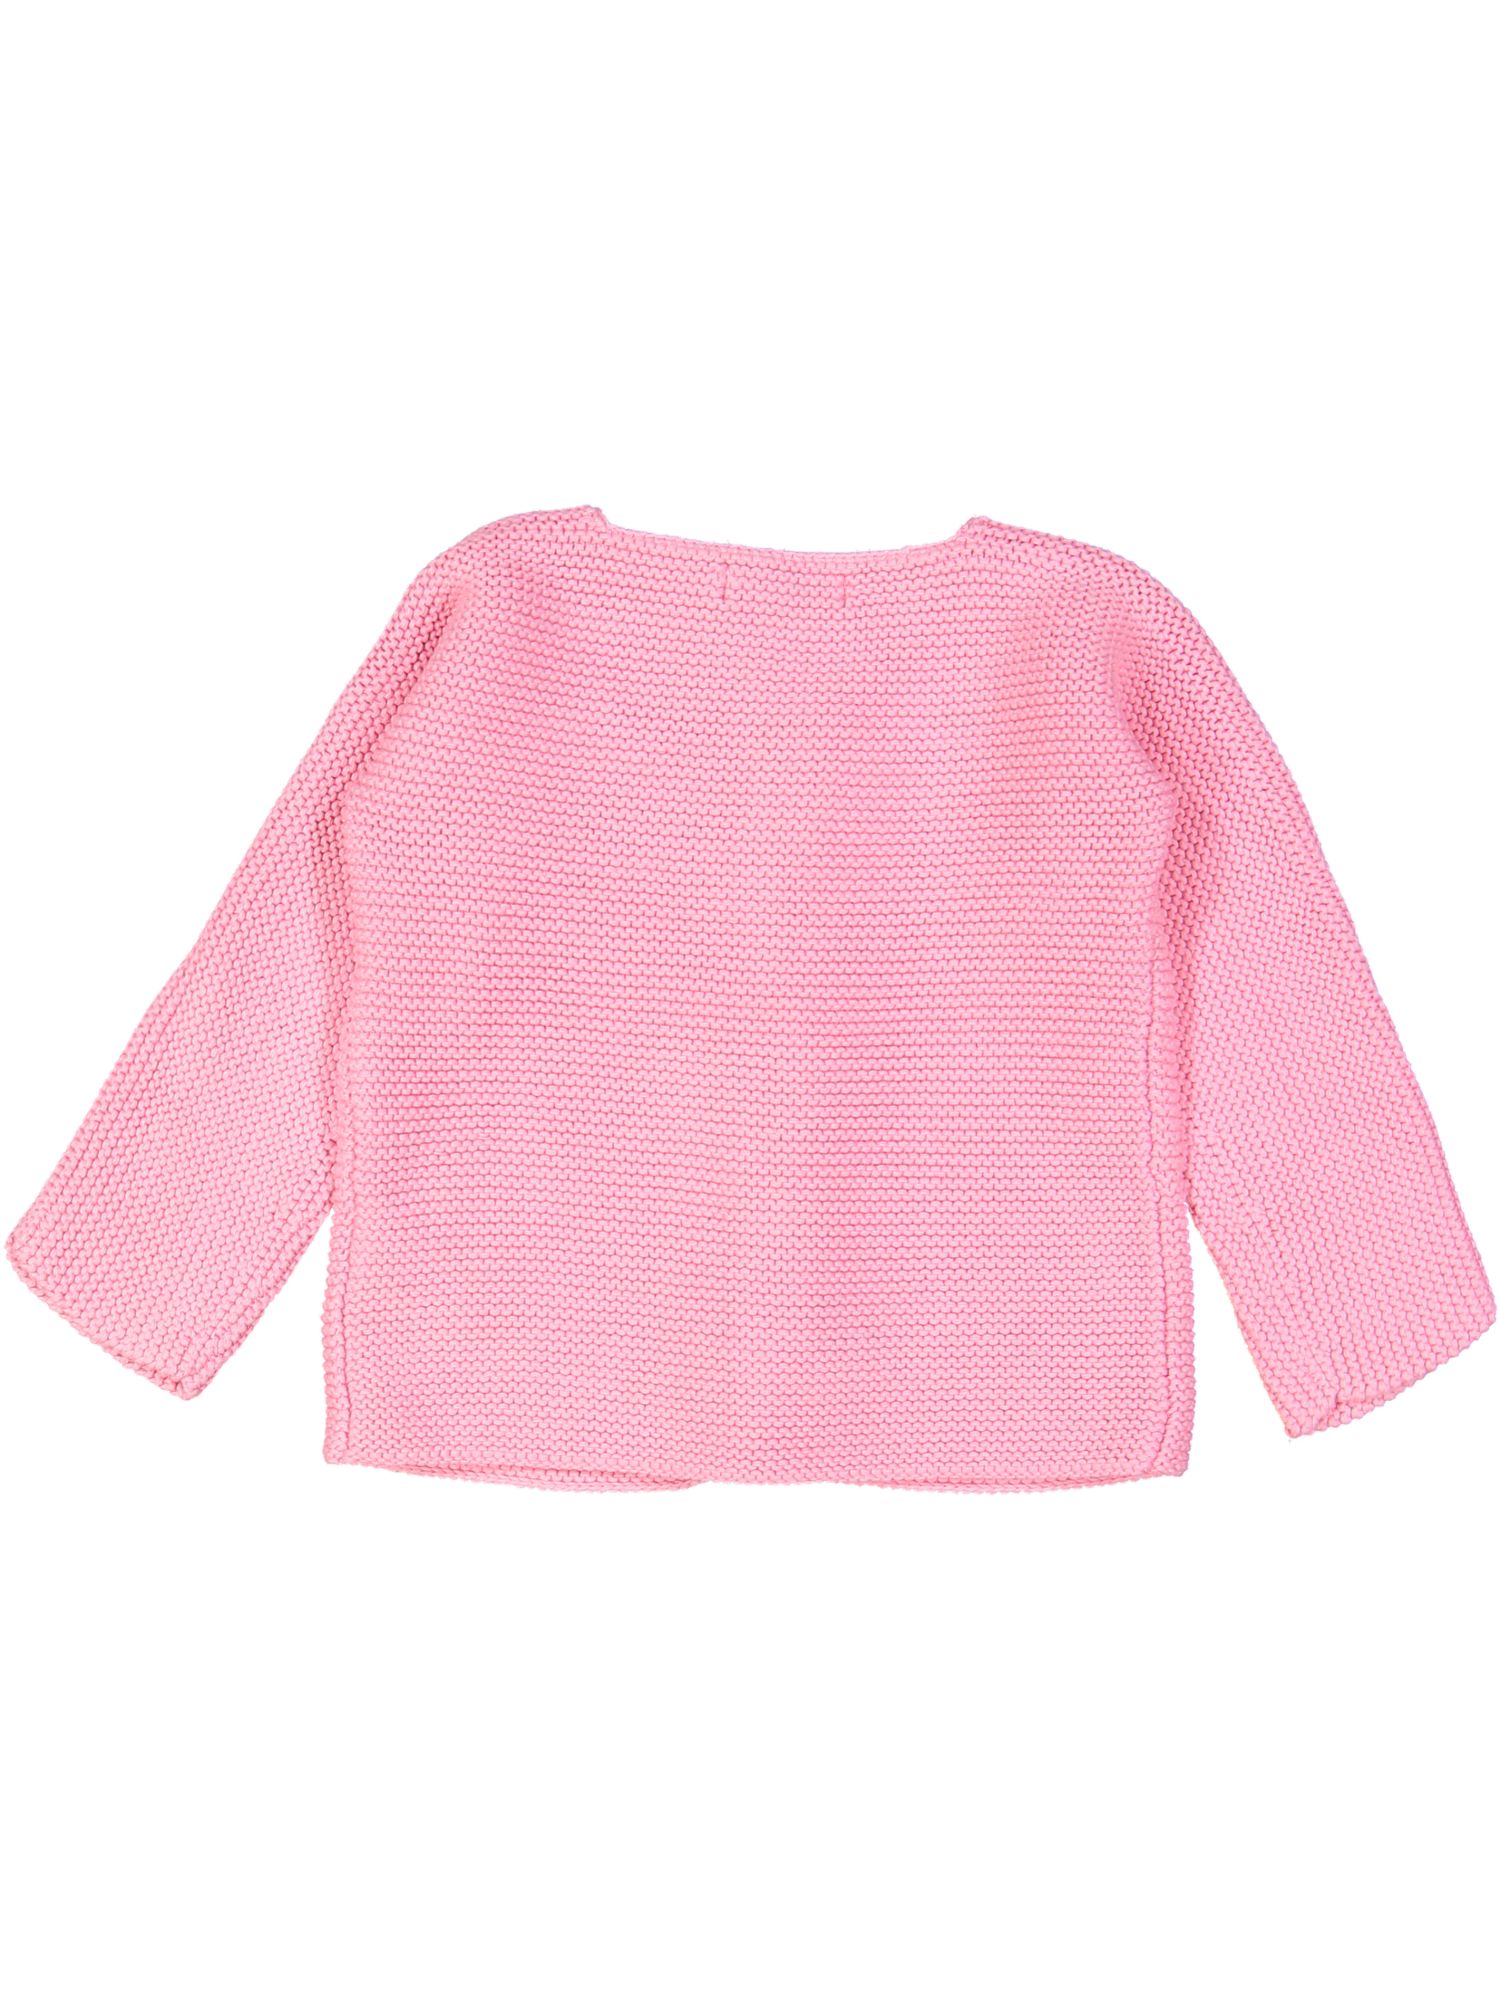 gilet tricot roze geweven 06m